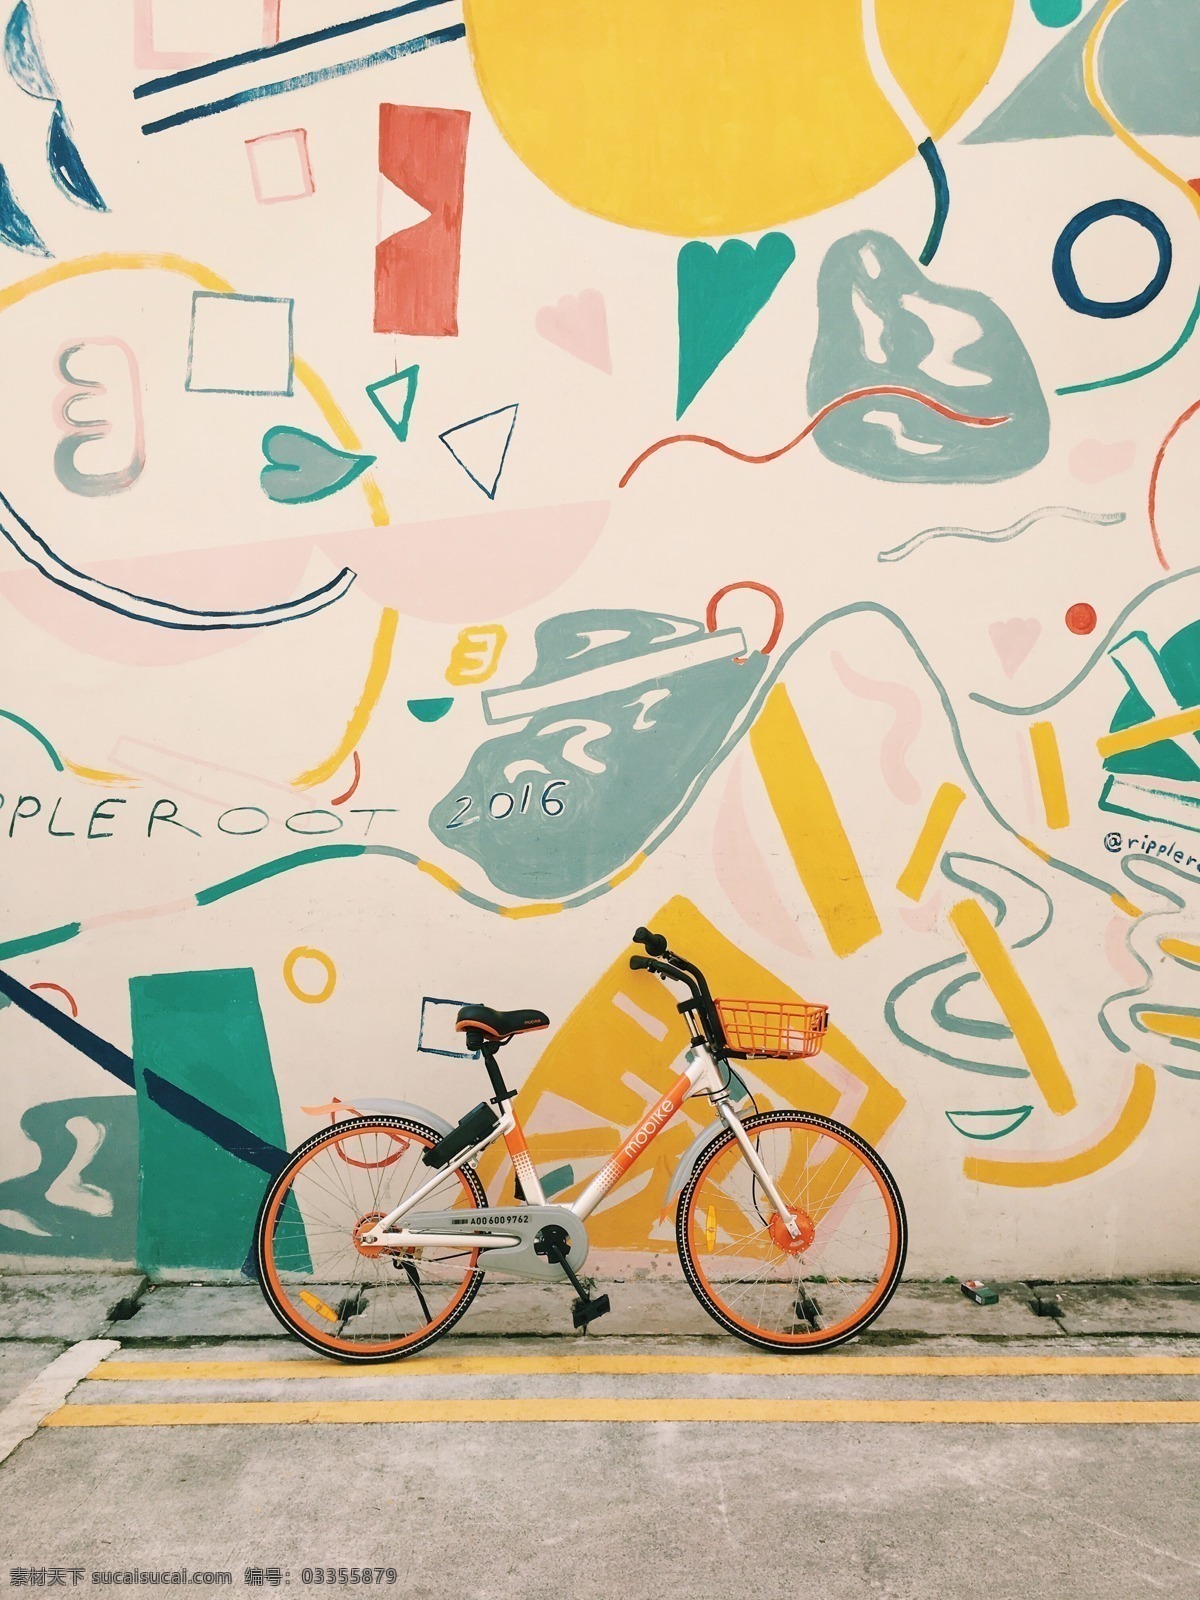 共享单车 自行车 单车 交通工具 脚踏车 城市 涂鸦 背景 停靠 共享 绿色出行 低碳出行 节能 生活百科 生活素材